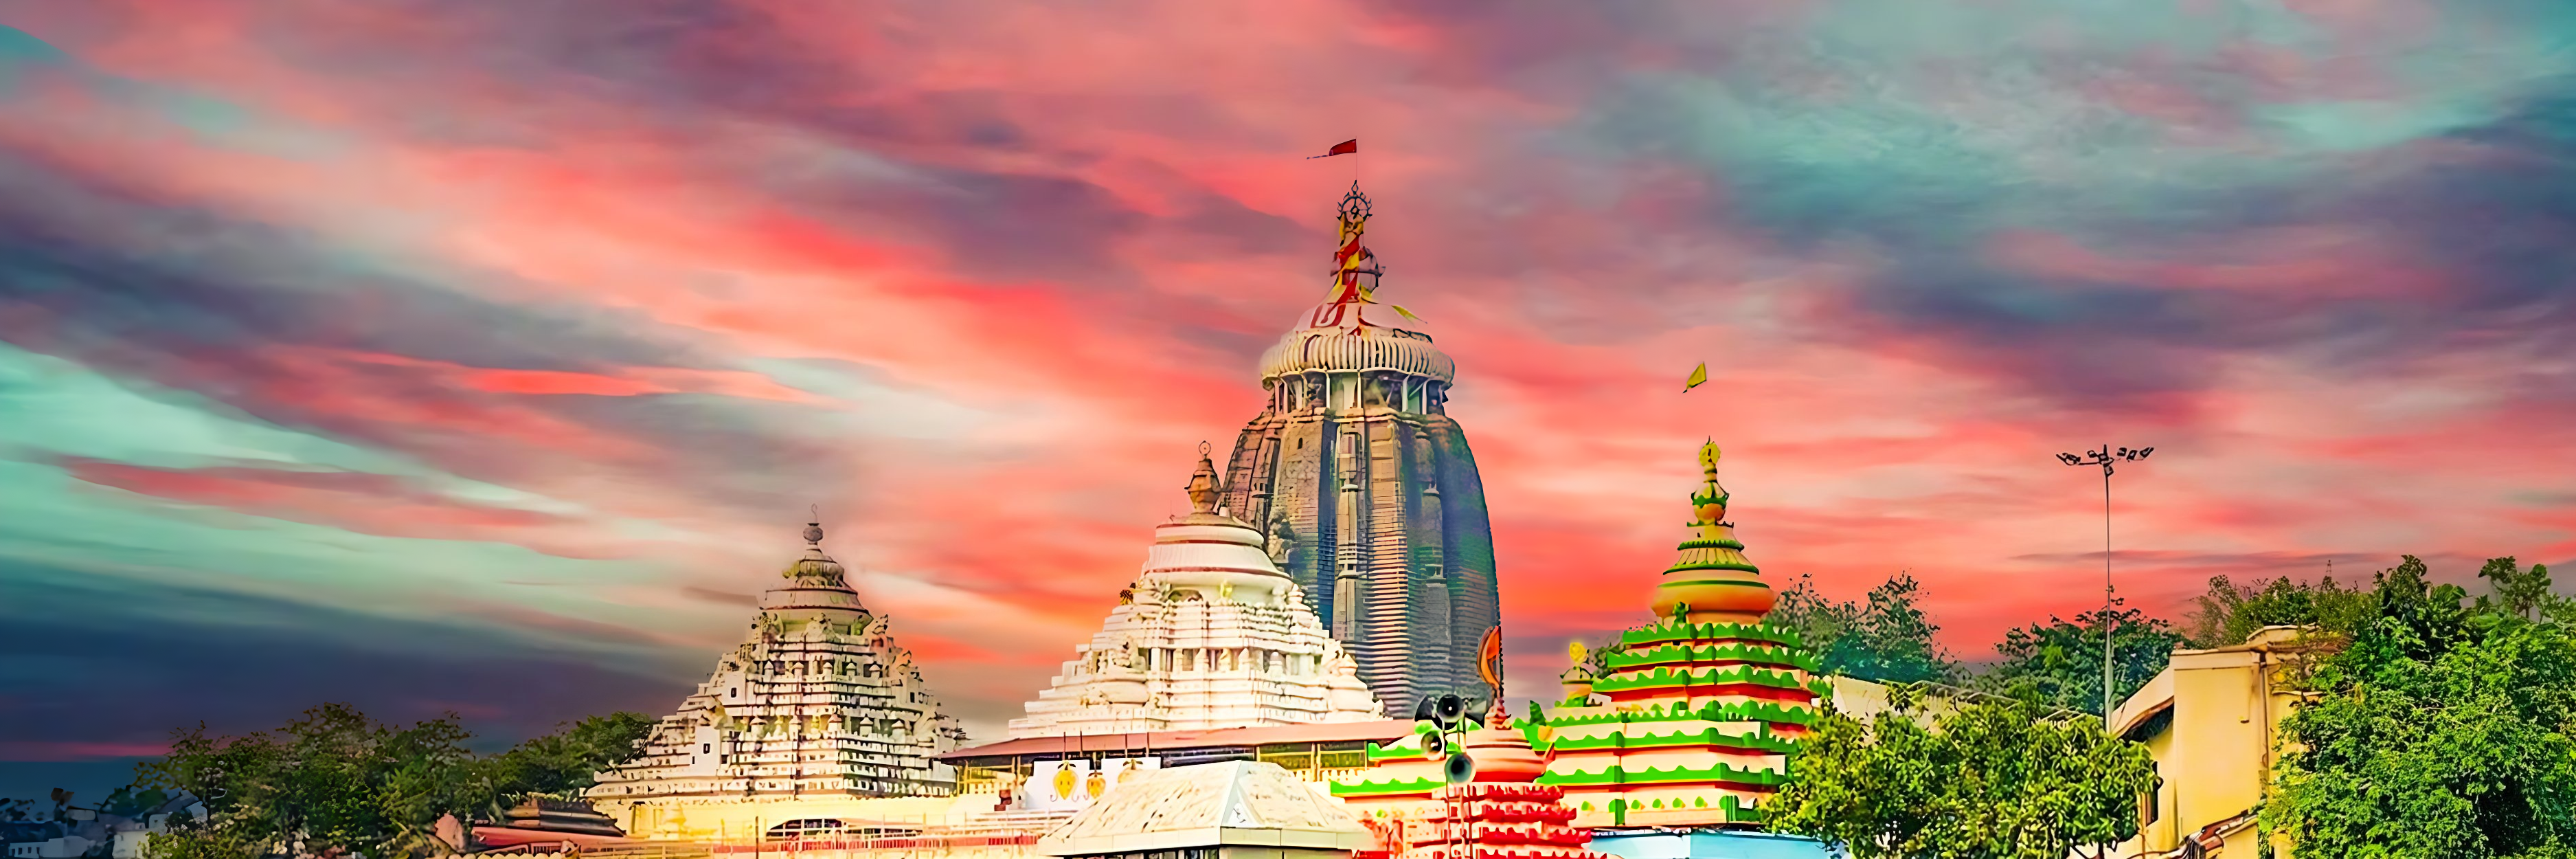 puri temple odisha image